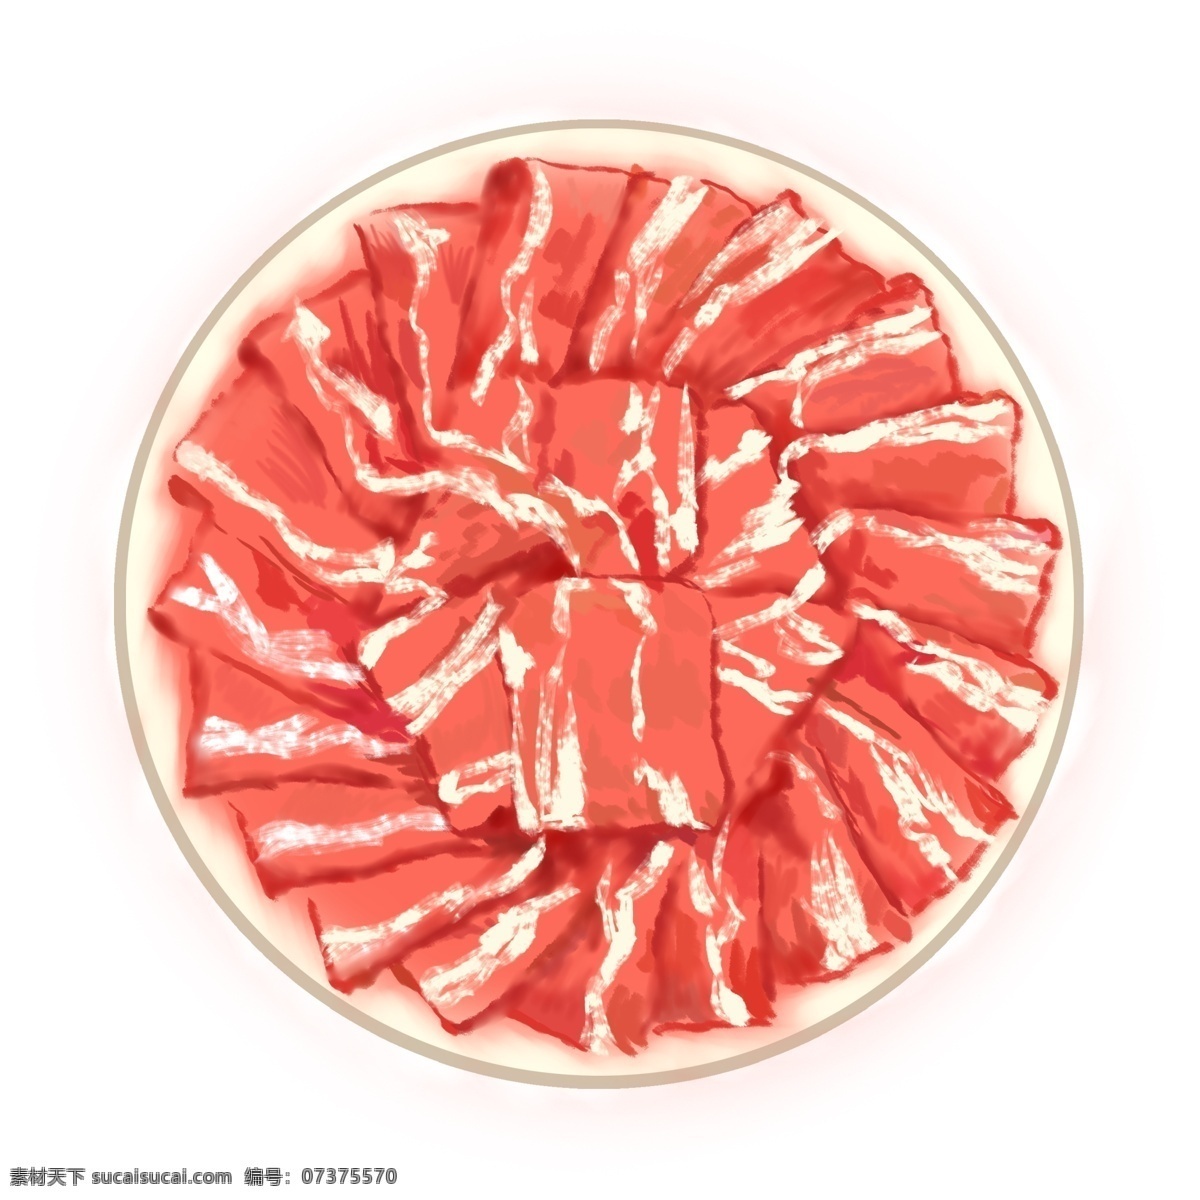 年货 手绘 冬季 食物 插画 羊肉 火锅 食物组合 组合 卡通插画风格 海报 banner